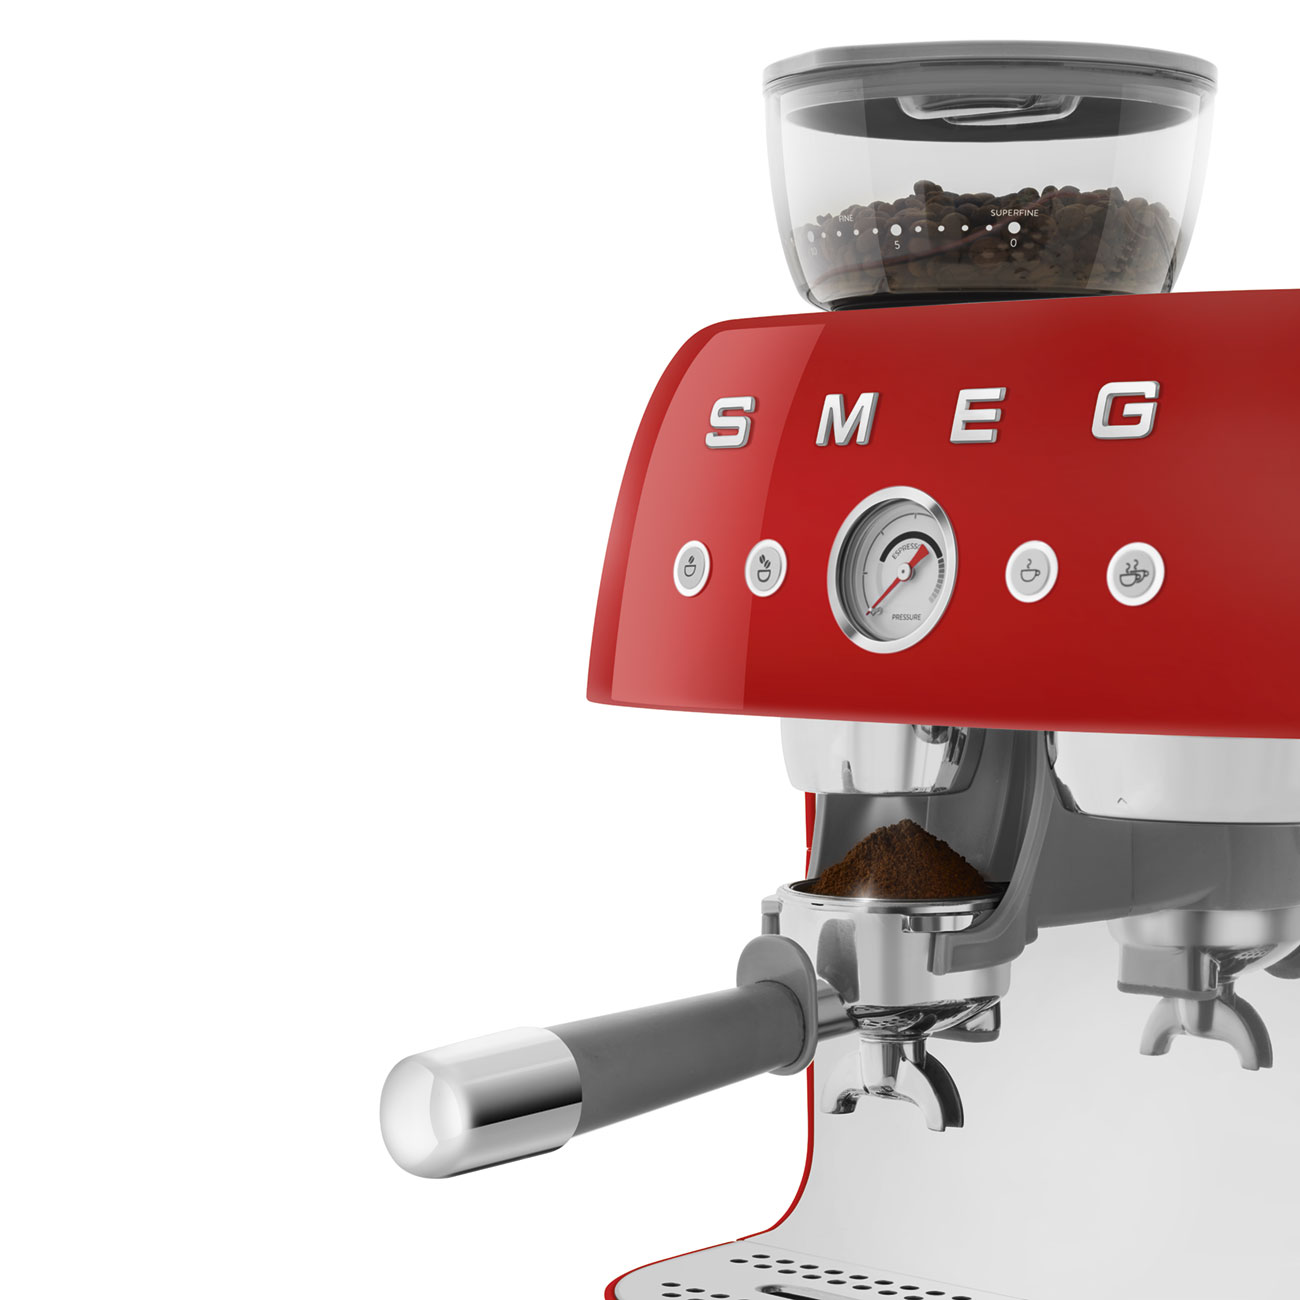 Smeg Rouge Machine à café expresso manuelle avec broyeur à grain intégré_6